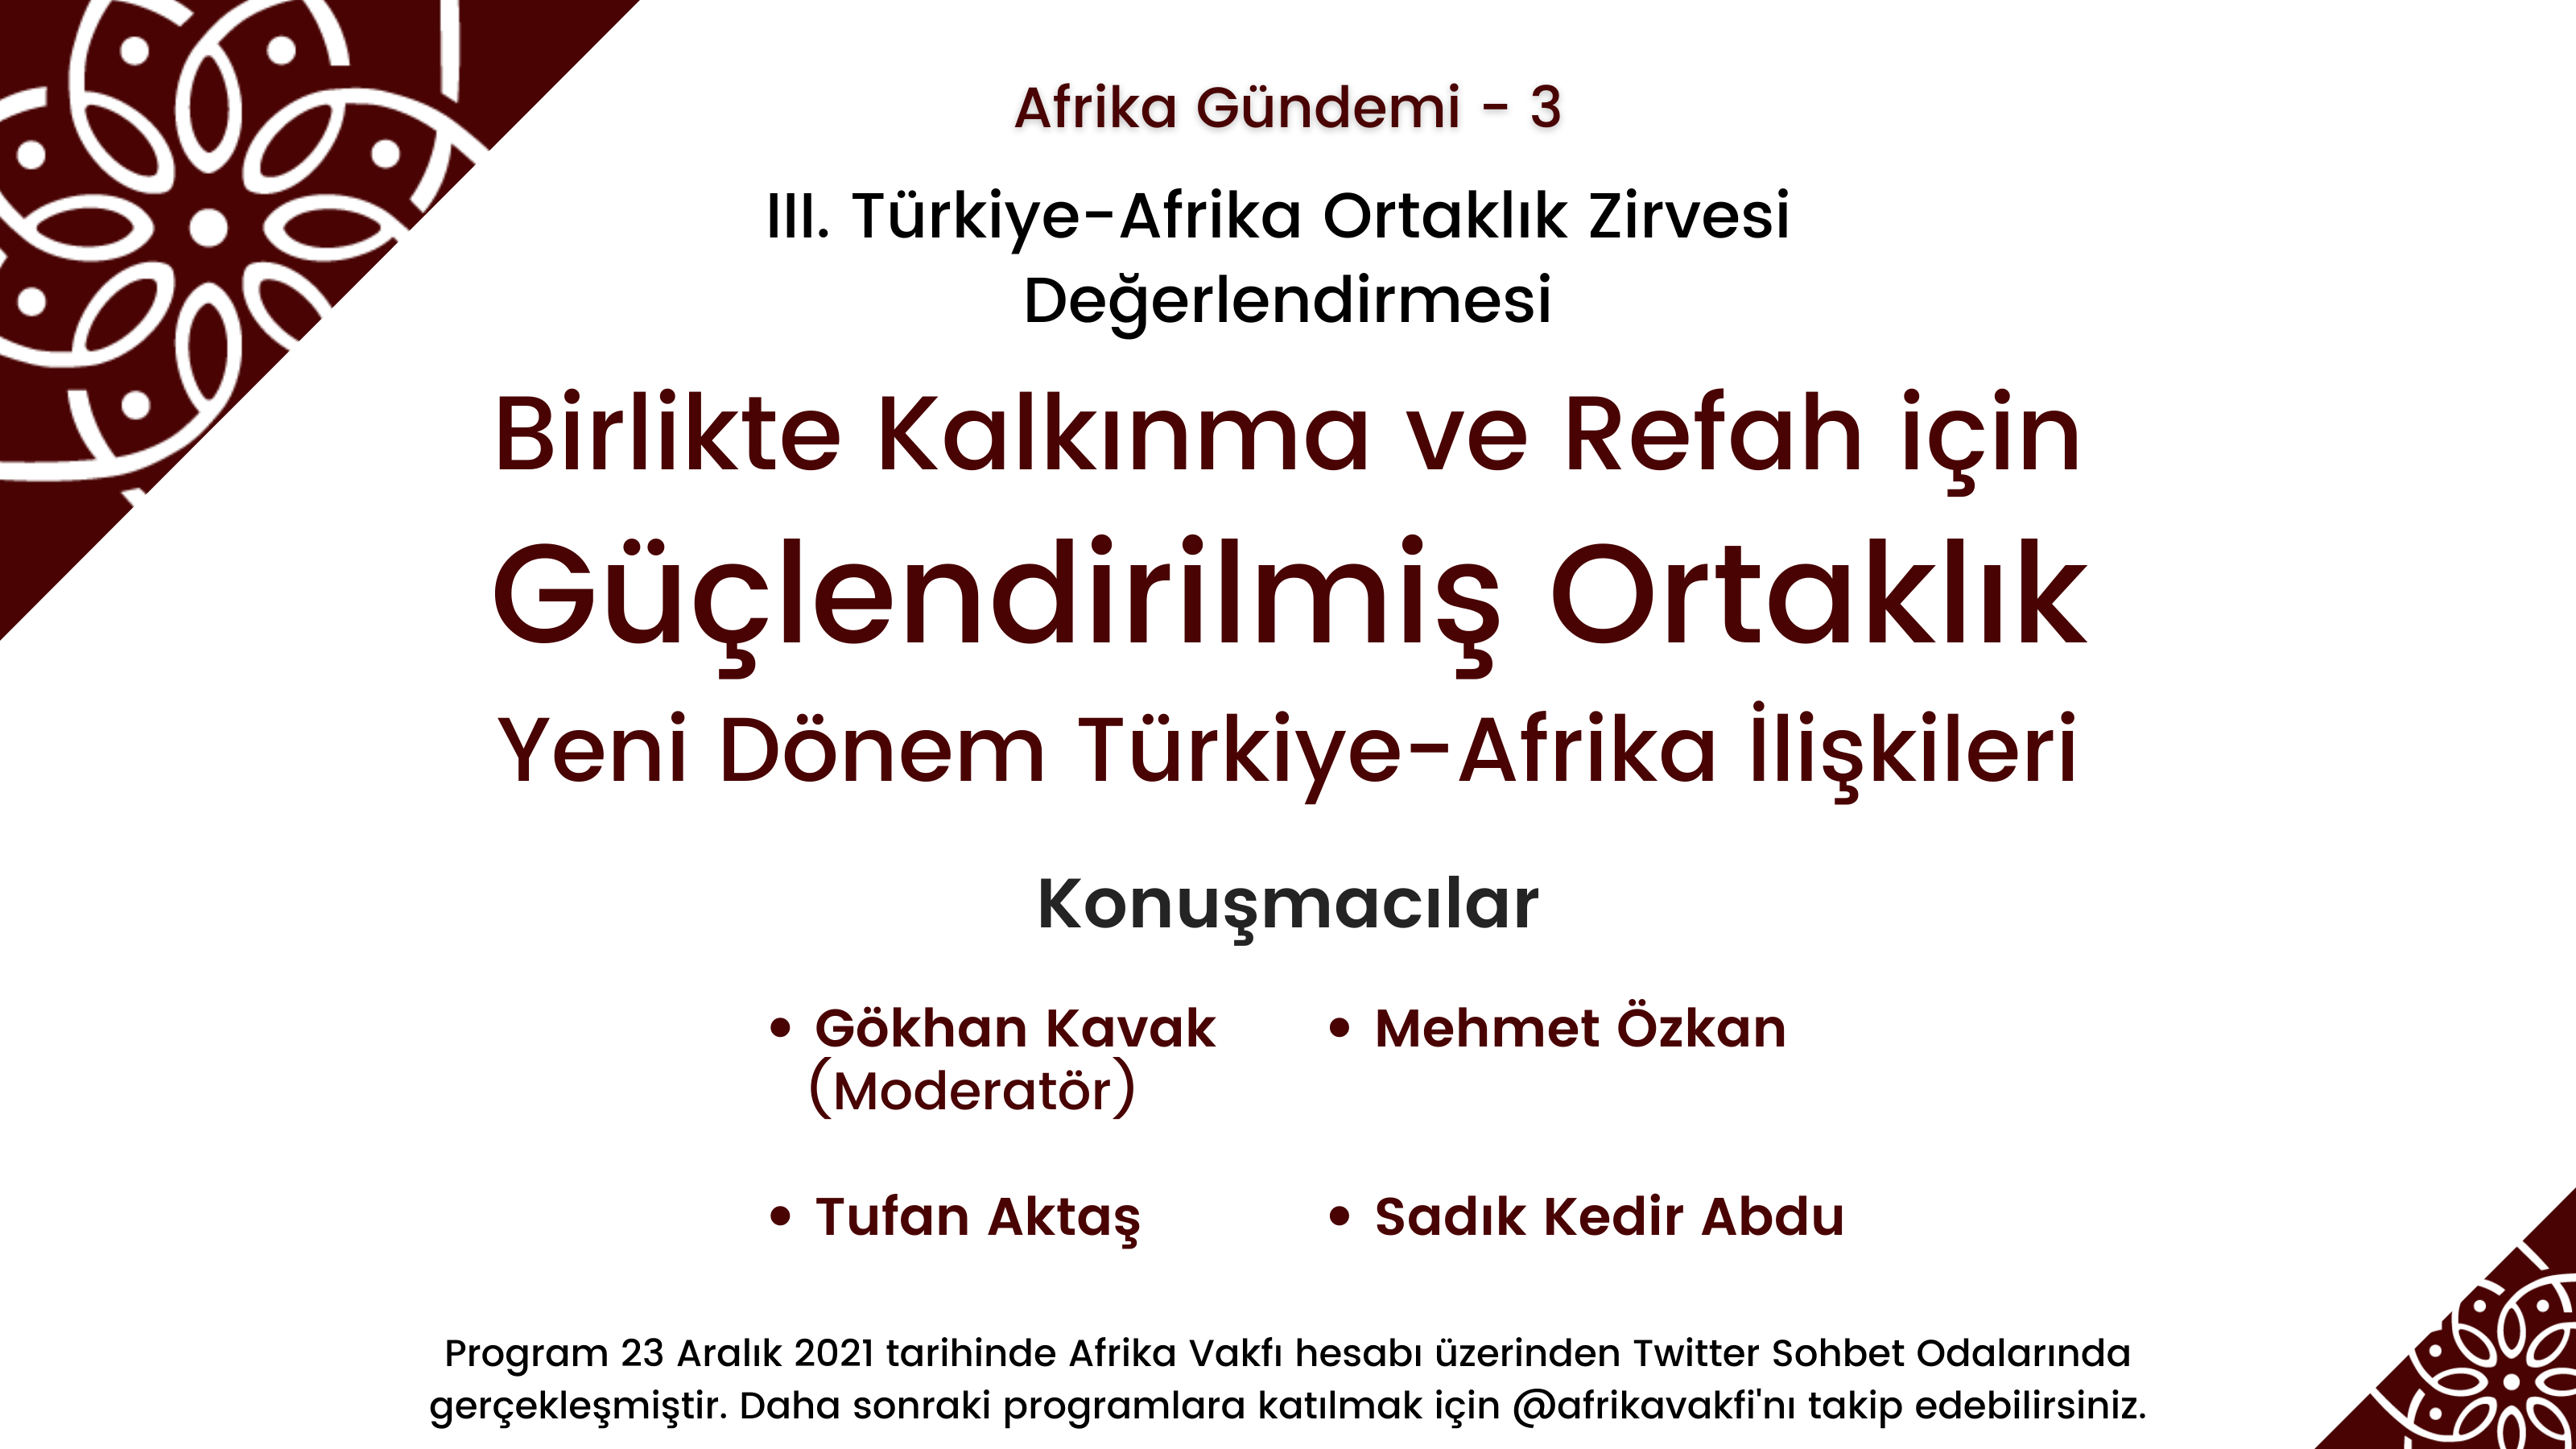 Yeni Dönem Türkiye-Afrika İlişkileri – Afrika Gündemi 3